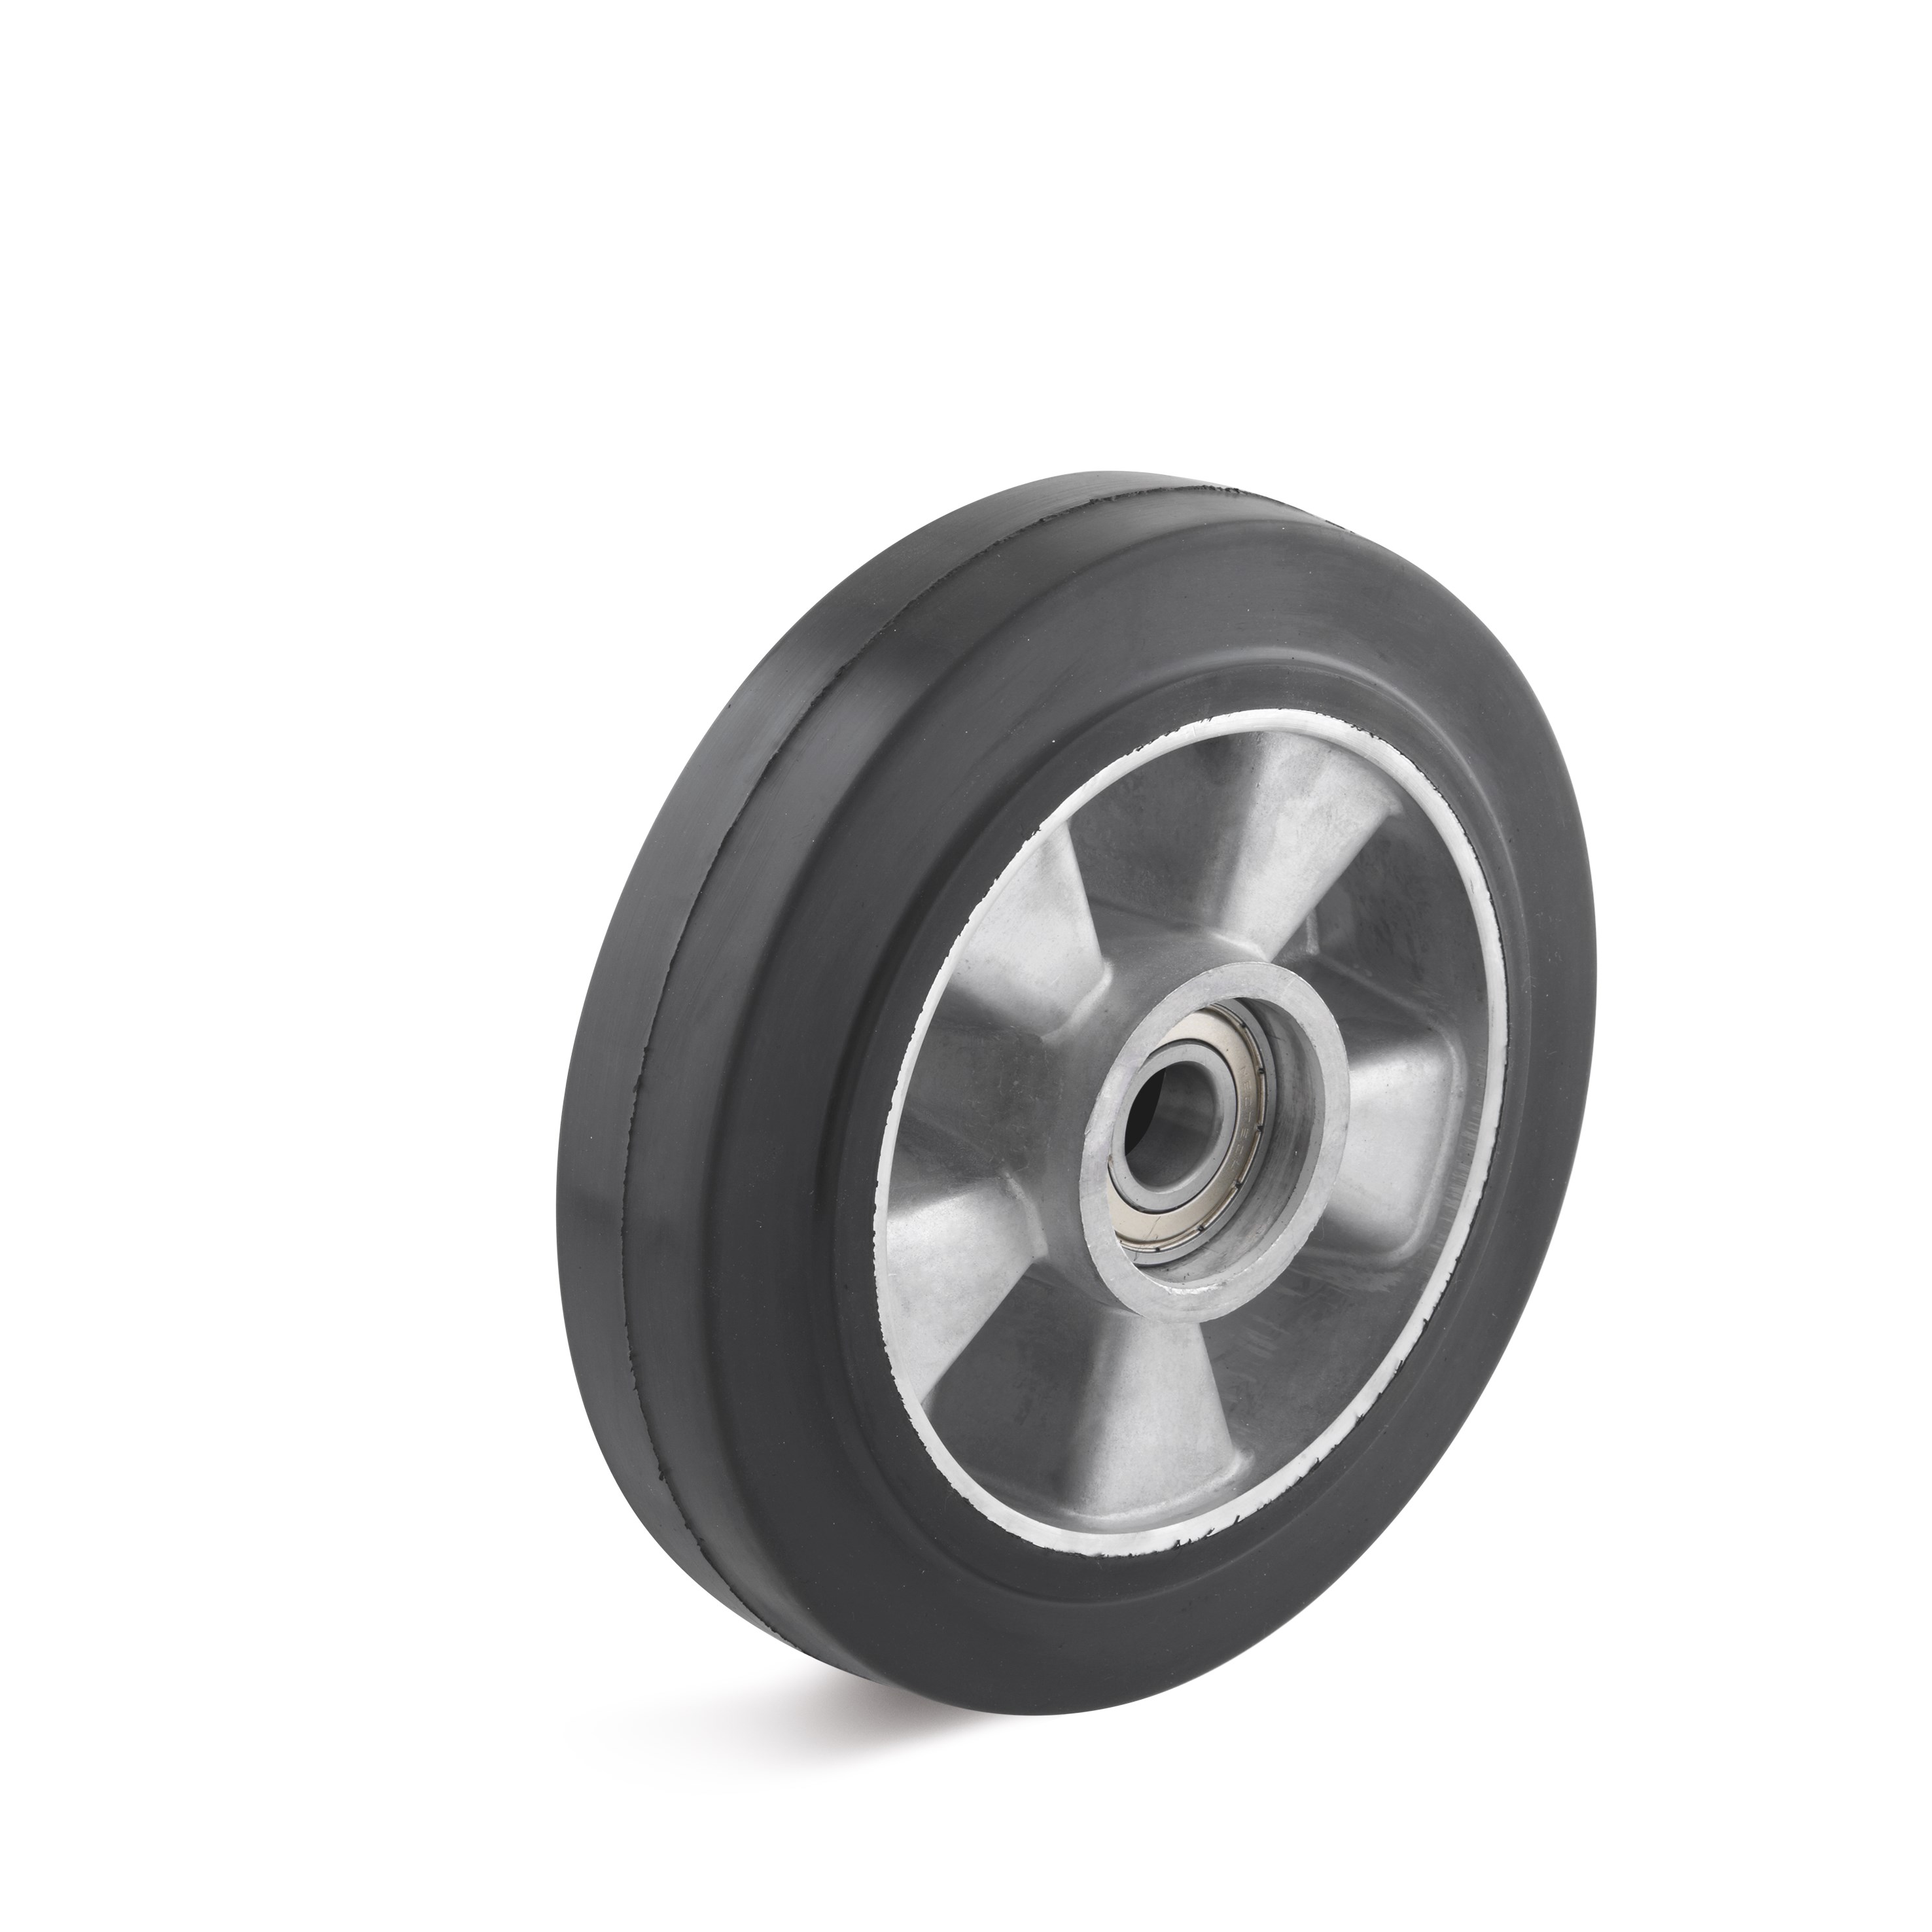 Elastic solid rubber wheel on aluminum die-cast rim